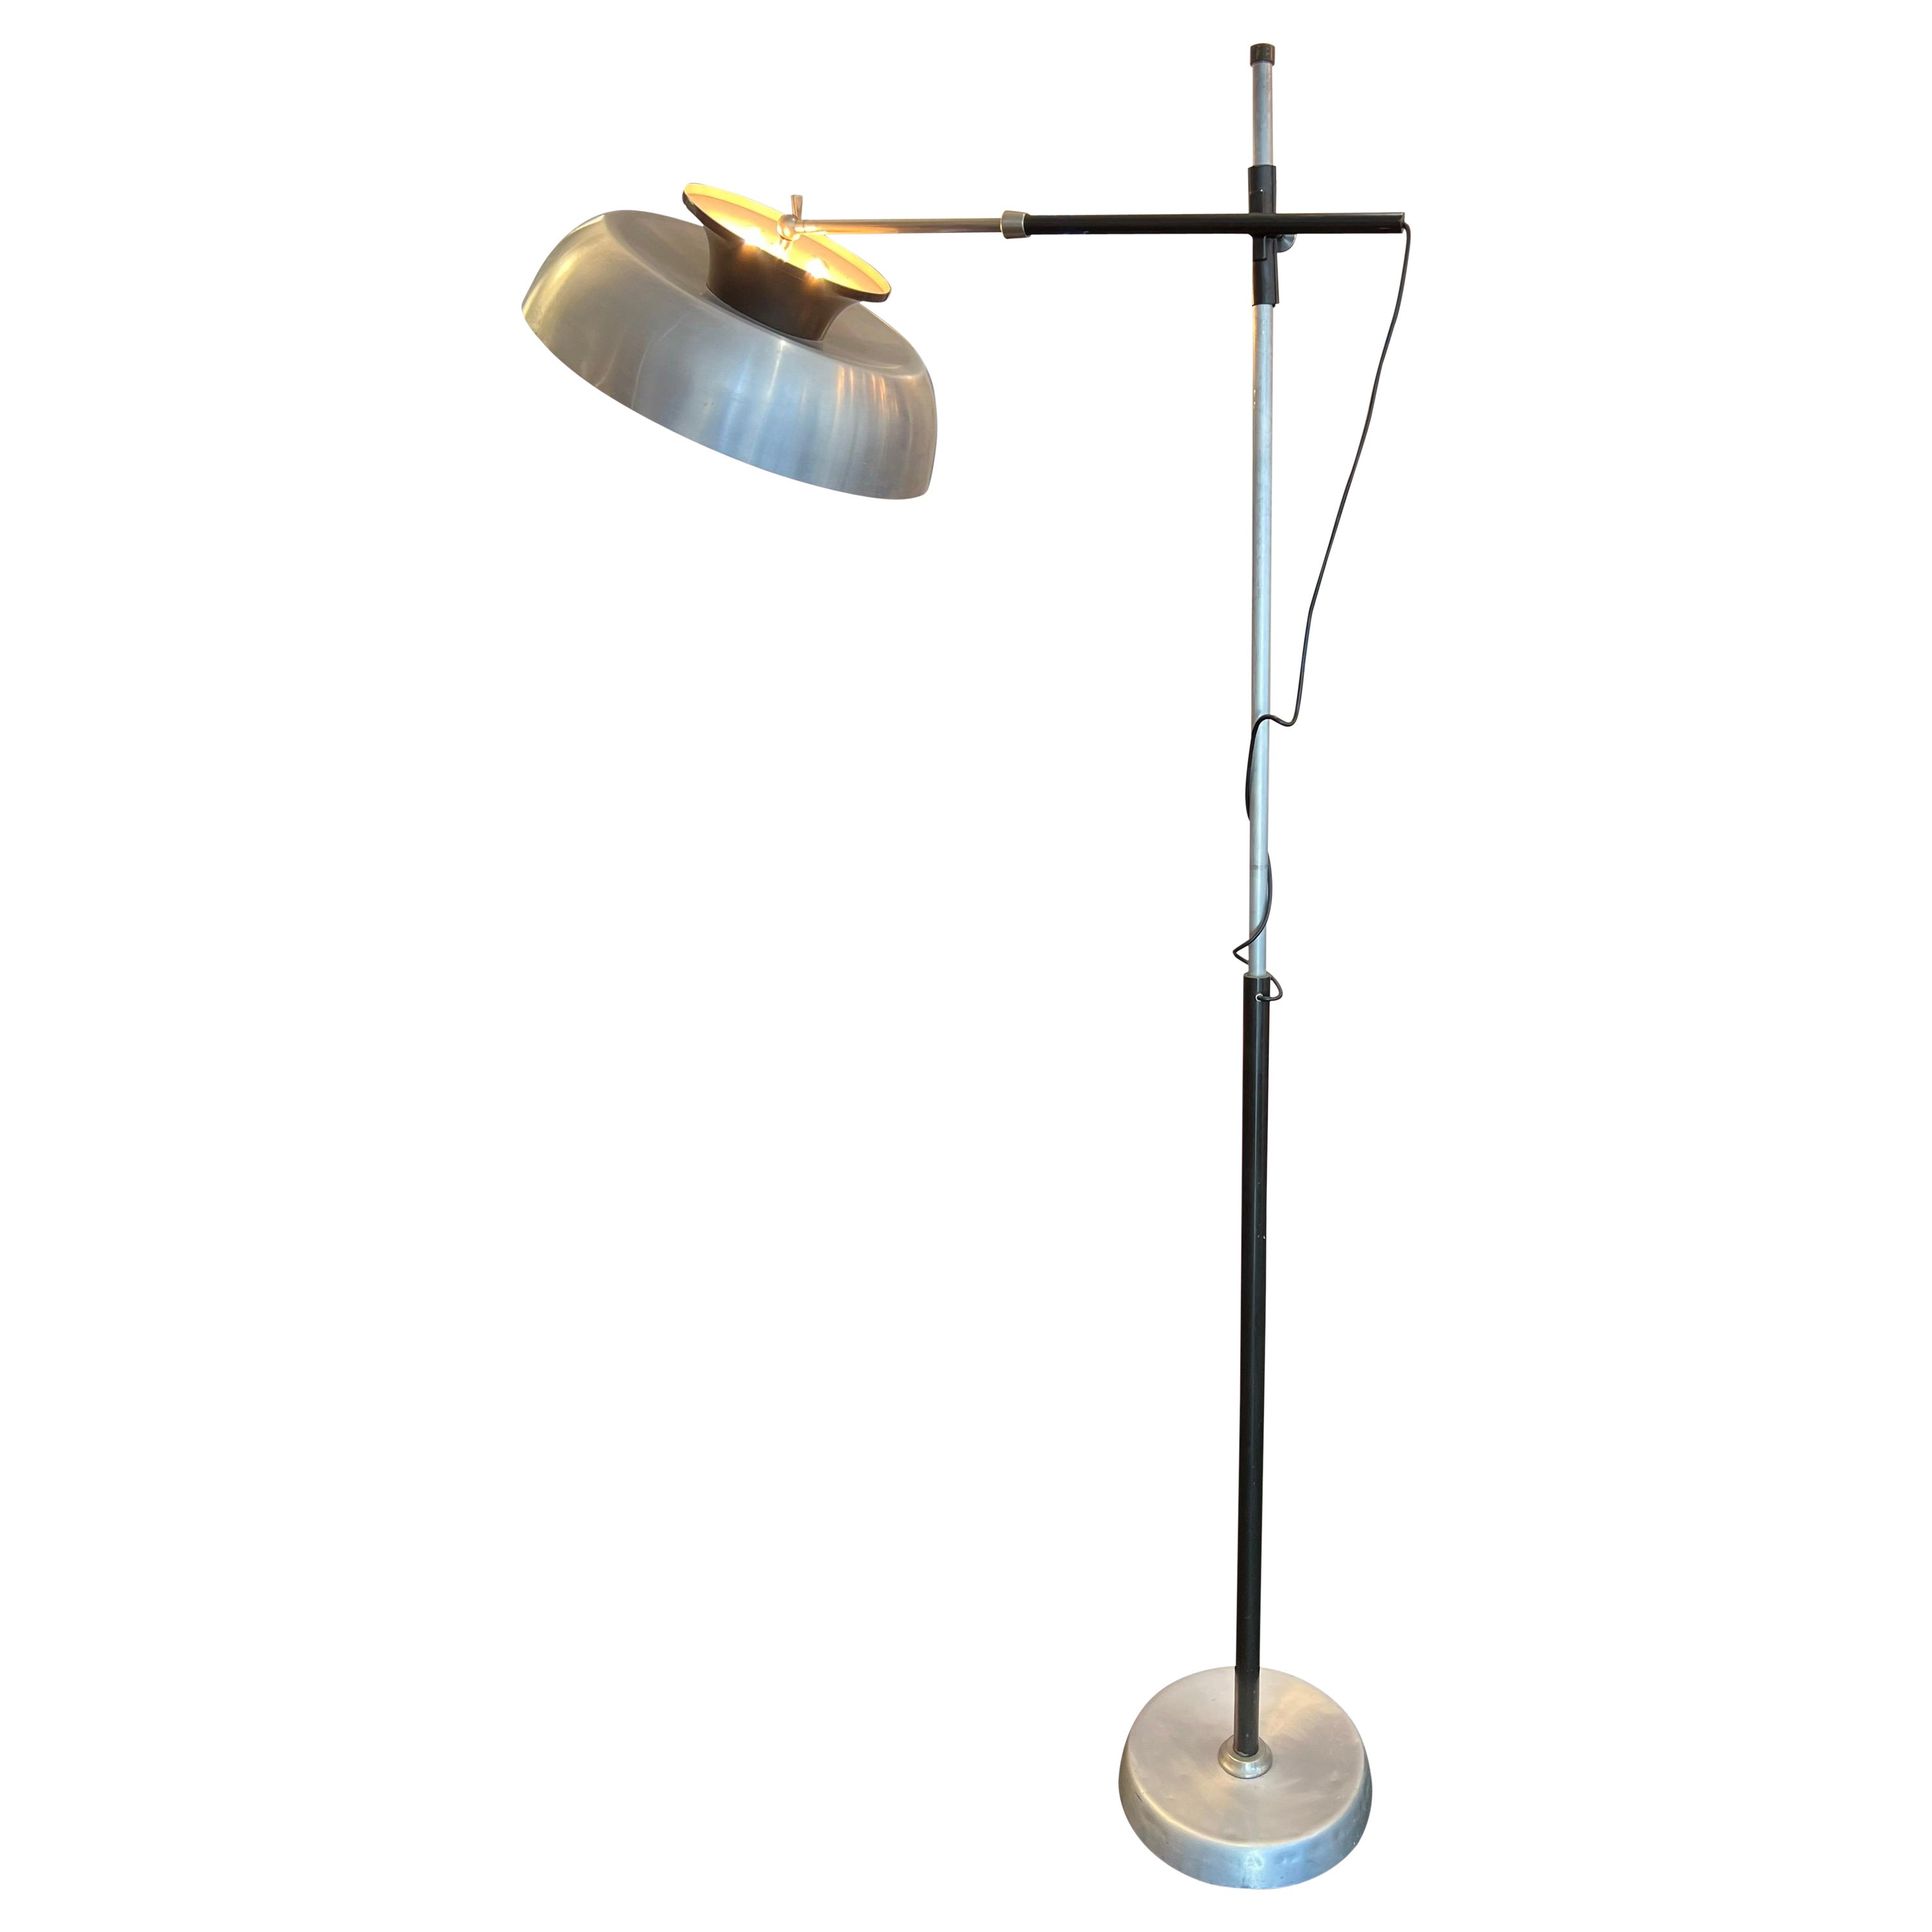 Rare Oscar Torlasco Articulated Floor Lamp For Sale